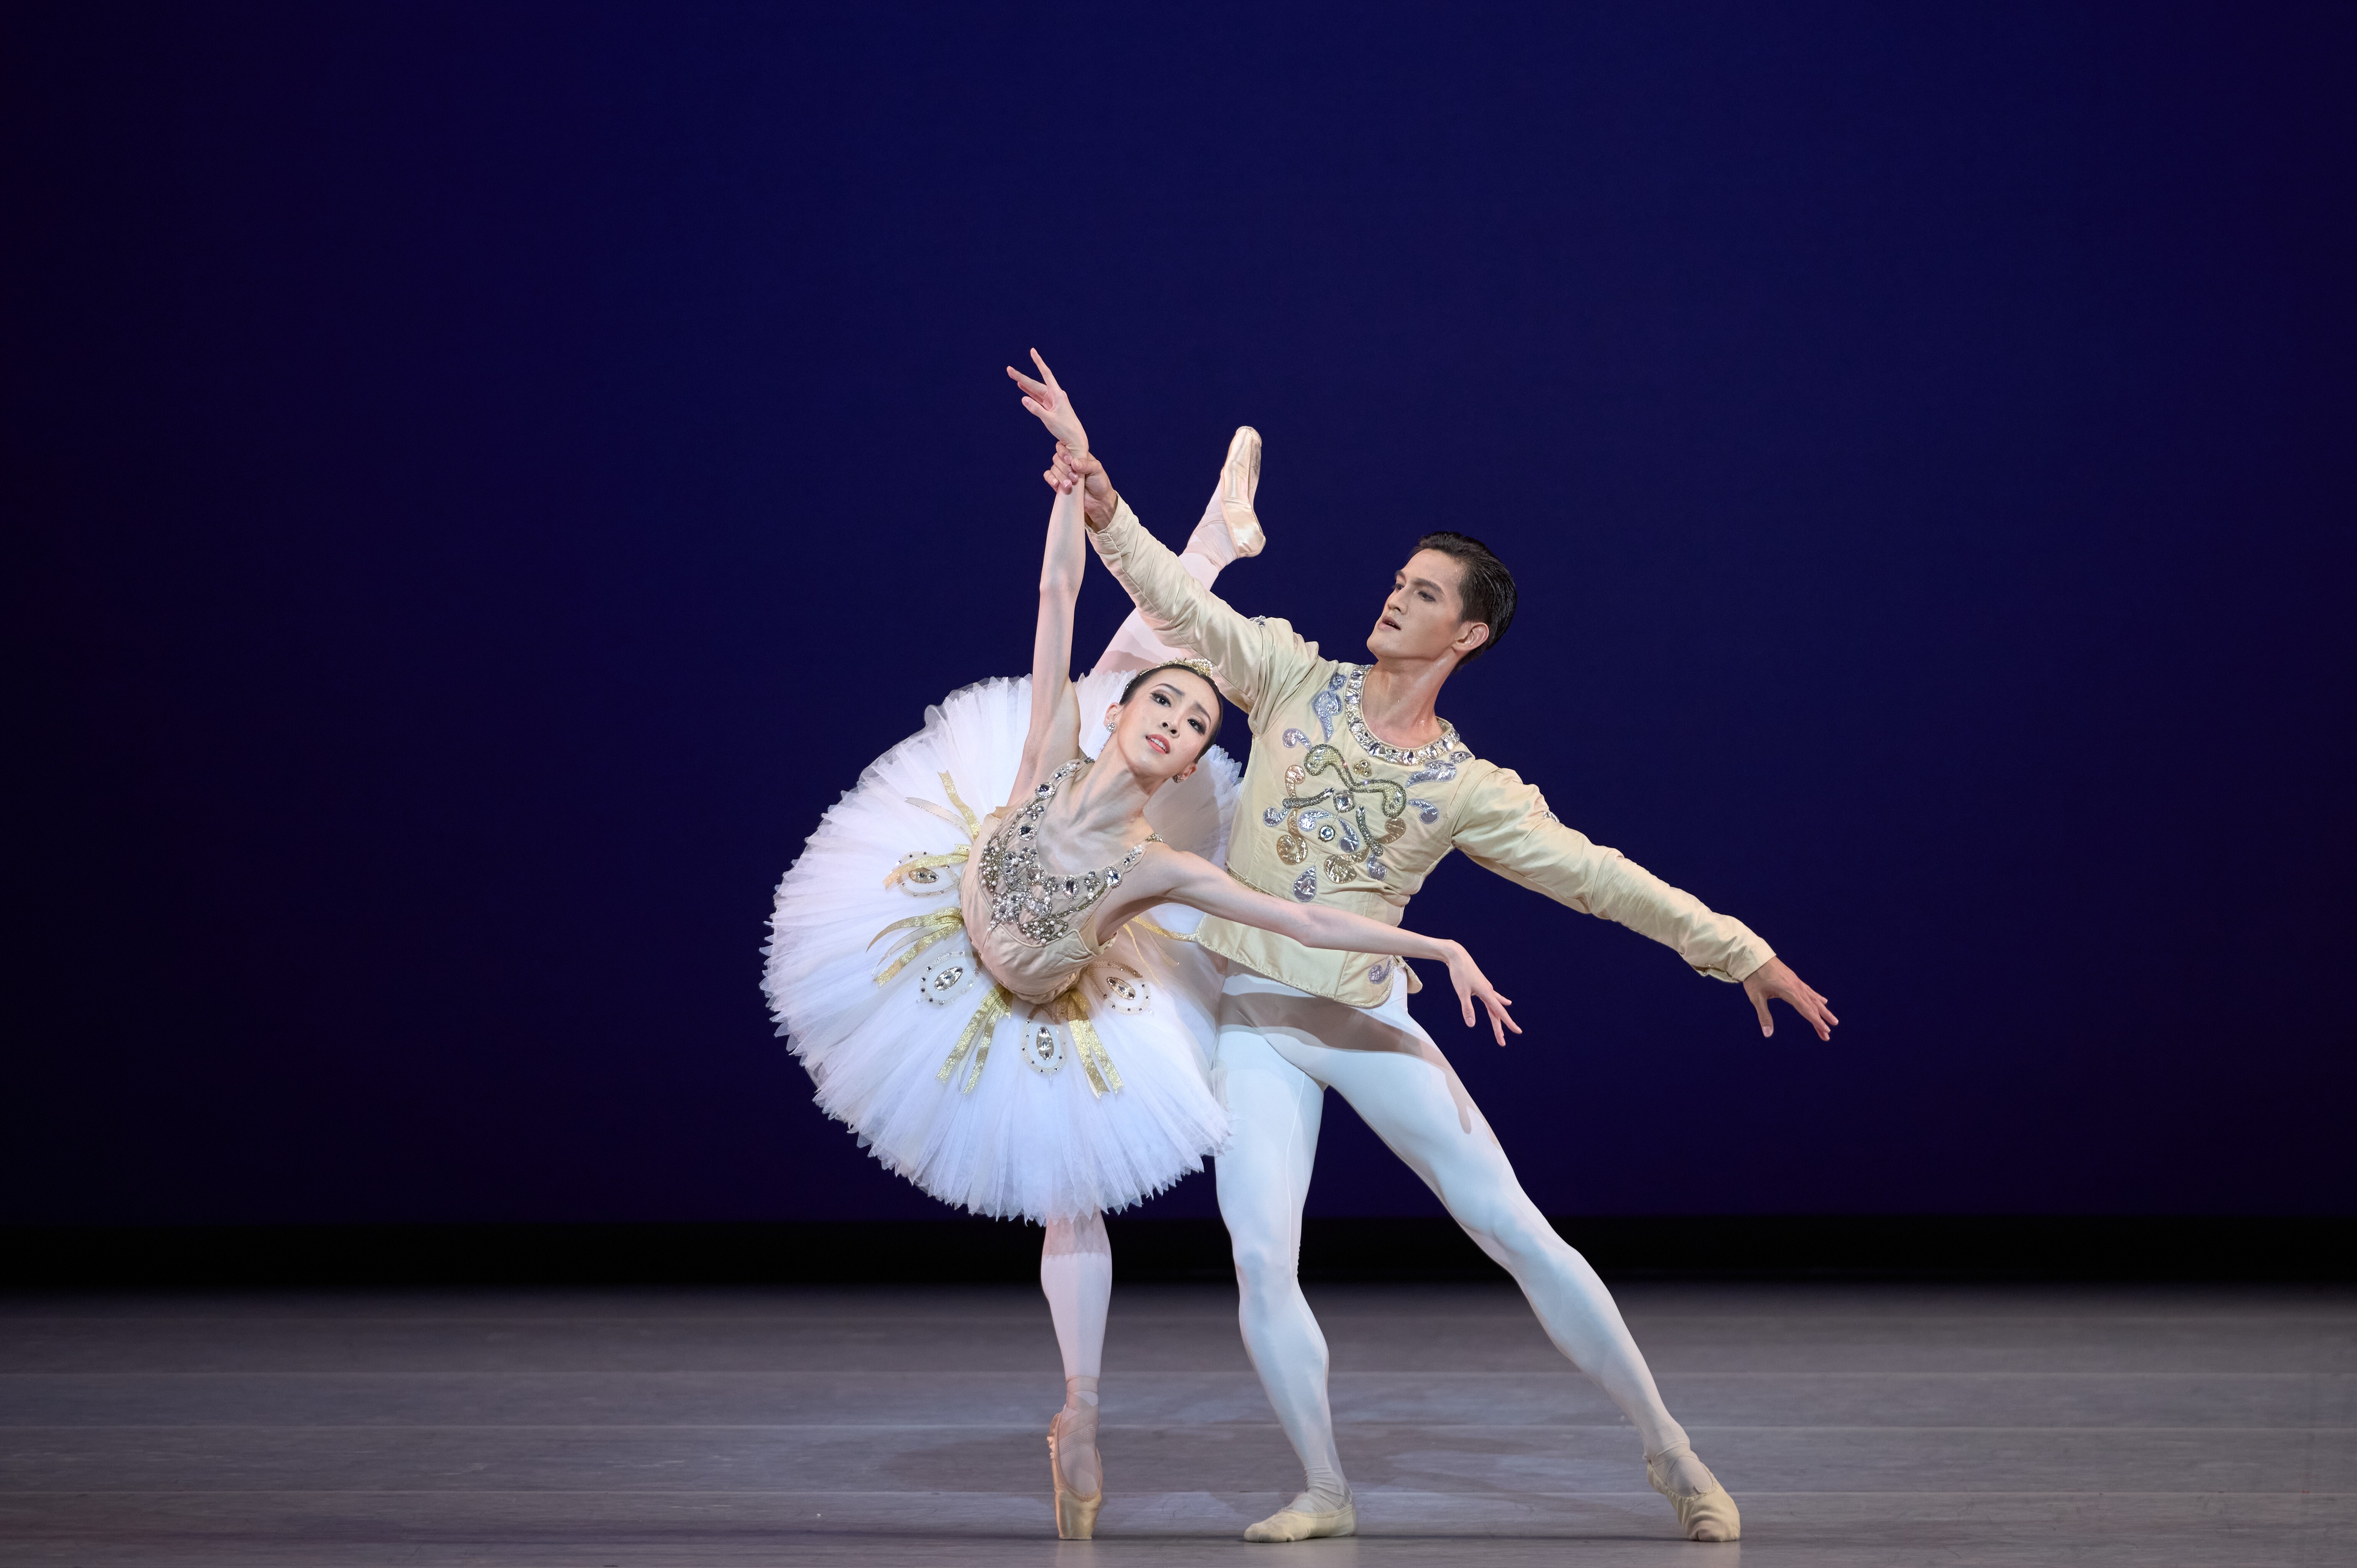 Hong Kong Ballet’s Chen Zhiyao and Garry Corpuz in Diamonds from Balanchine’s Jewels. Photo: Hong Kong Ballet/Tony Luk